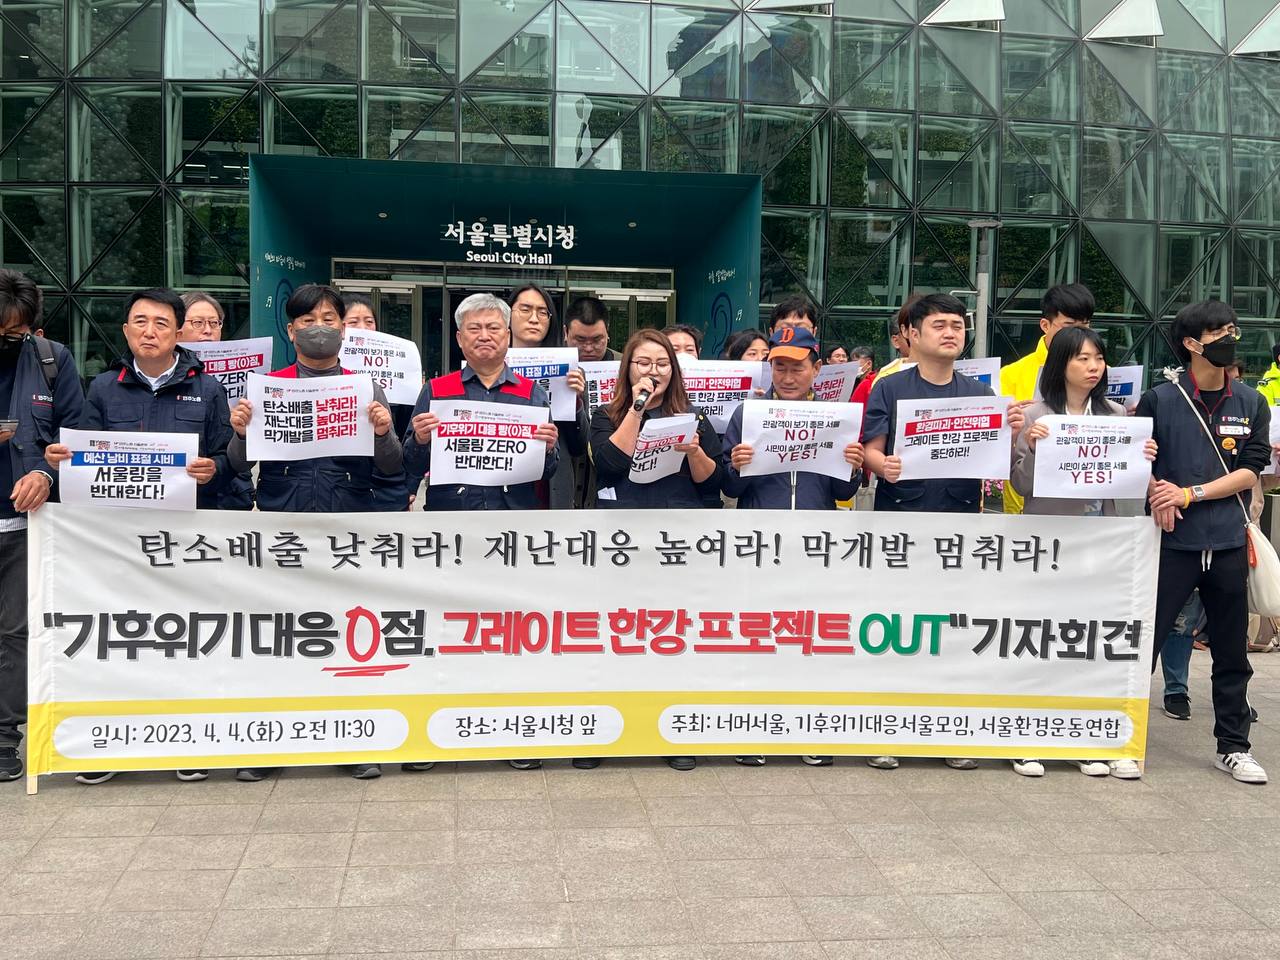 4월 4일 오전 11시 30분, 서울시청 앞에서 "기후위기 대응 빵점, 그레이트 한강 프로젝트 OUT" 기자회견이 열리는 모습이다.